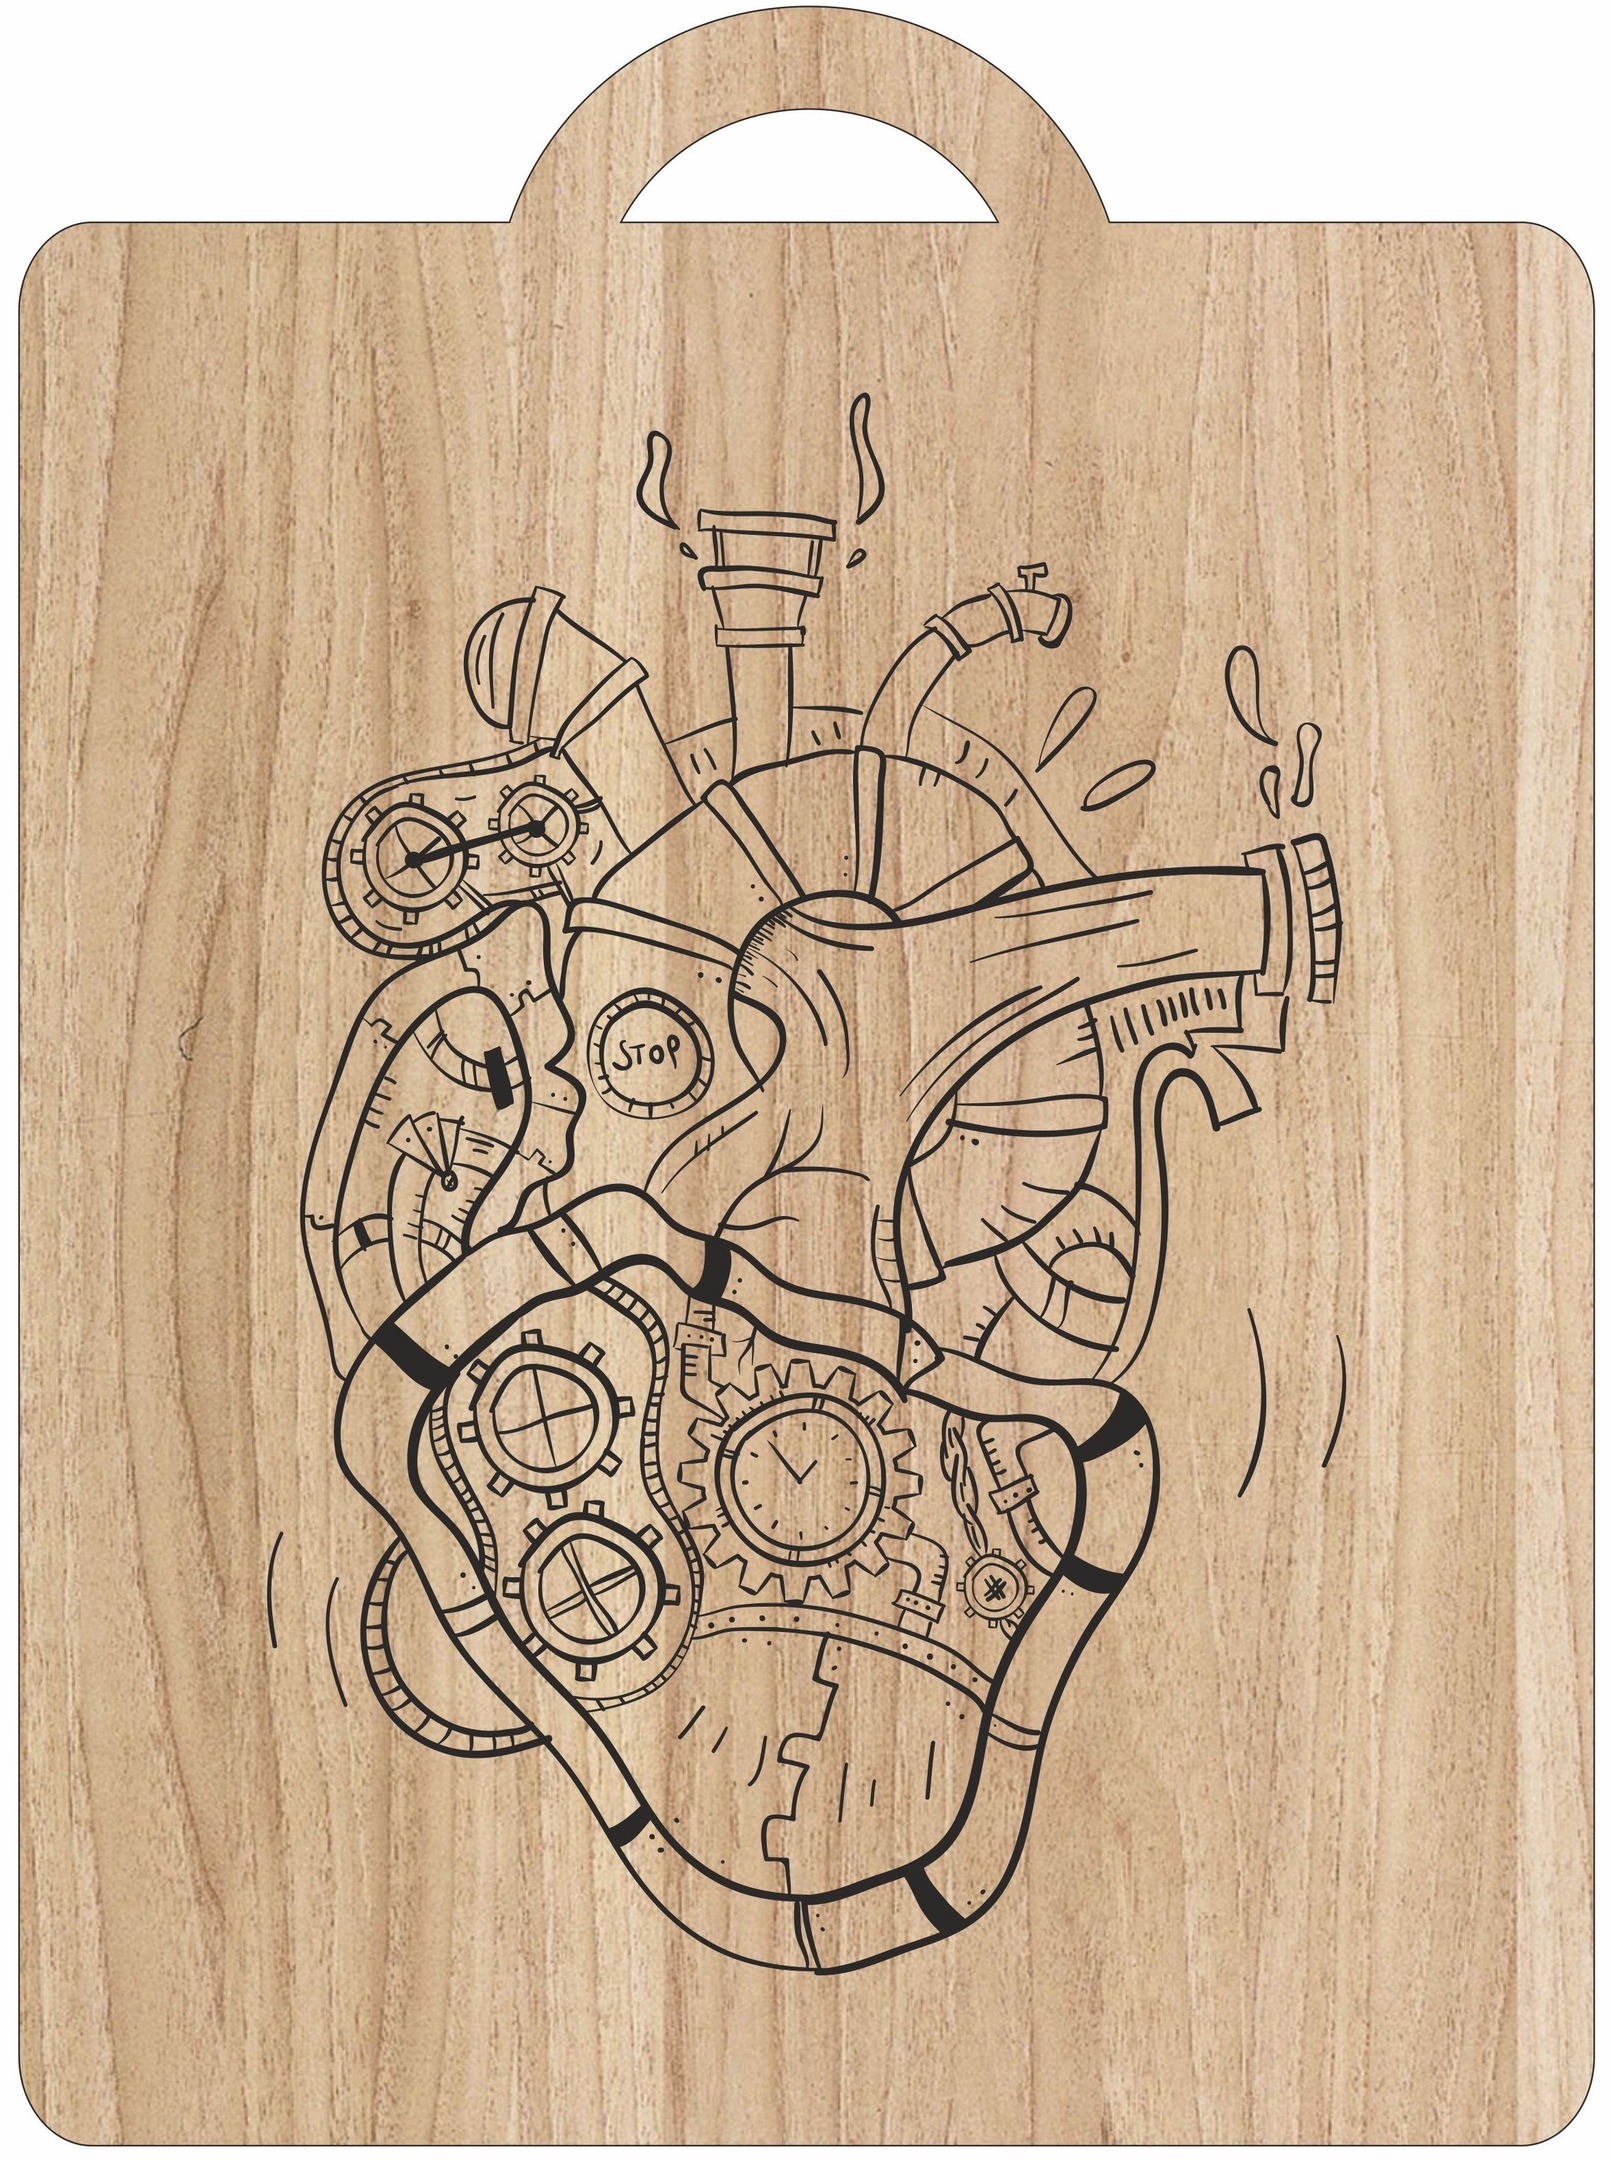 बोर्ड काटने पर लेजर उत्कीर्णन यांत्रिक हृदय कला